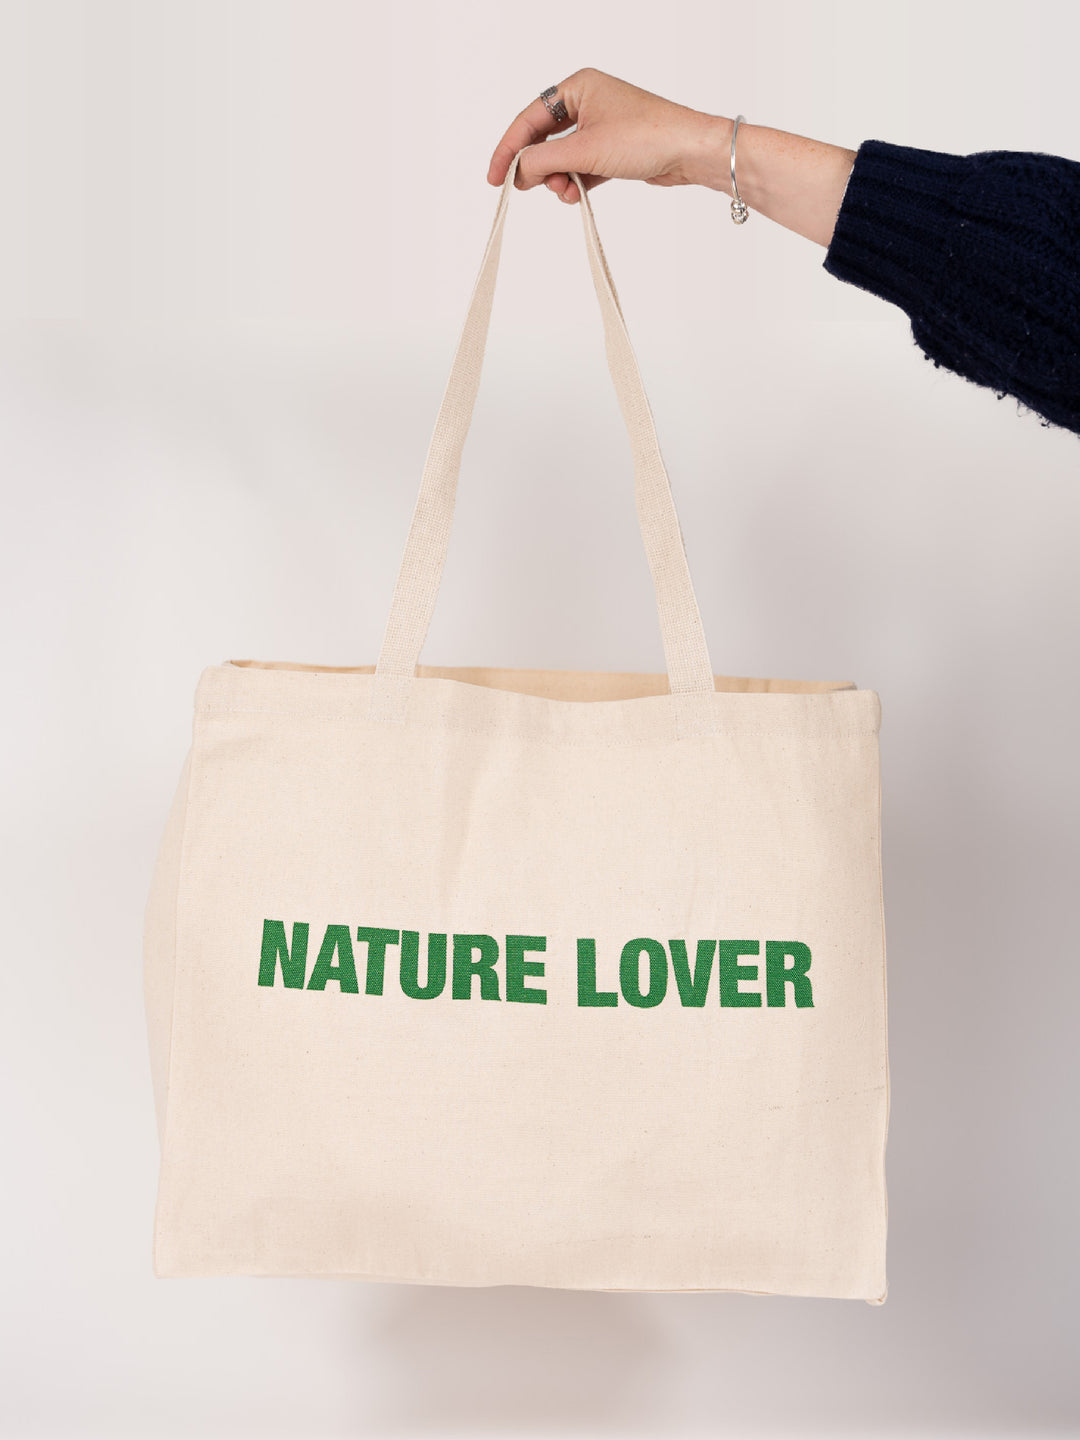 Tote bag #Naturelovers